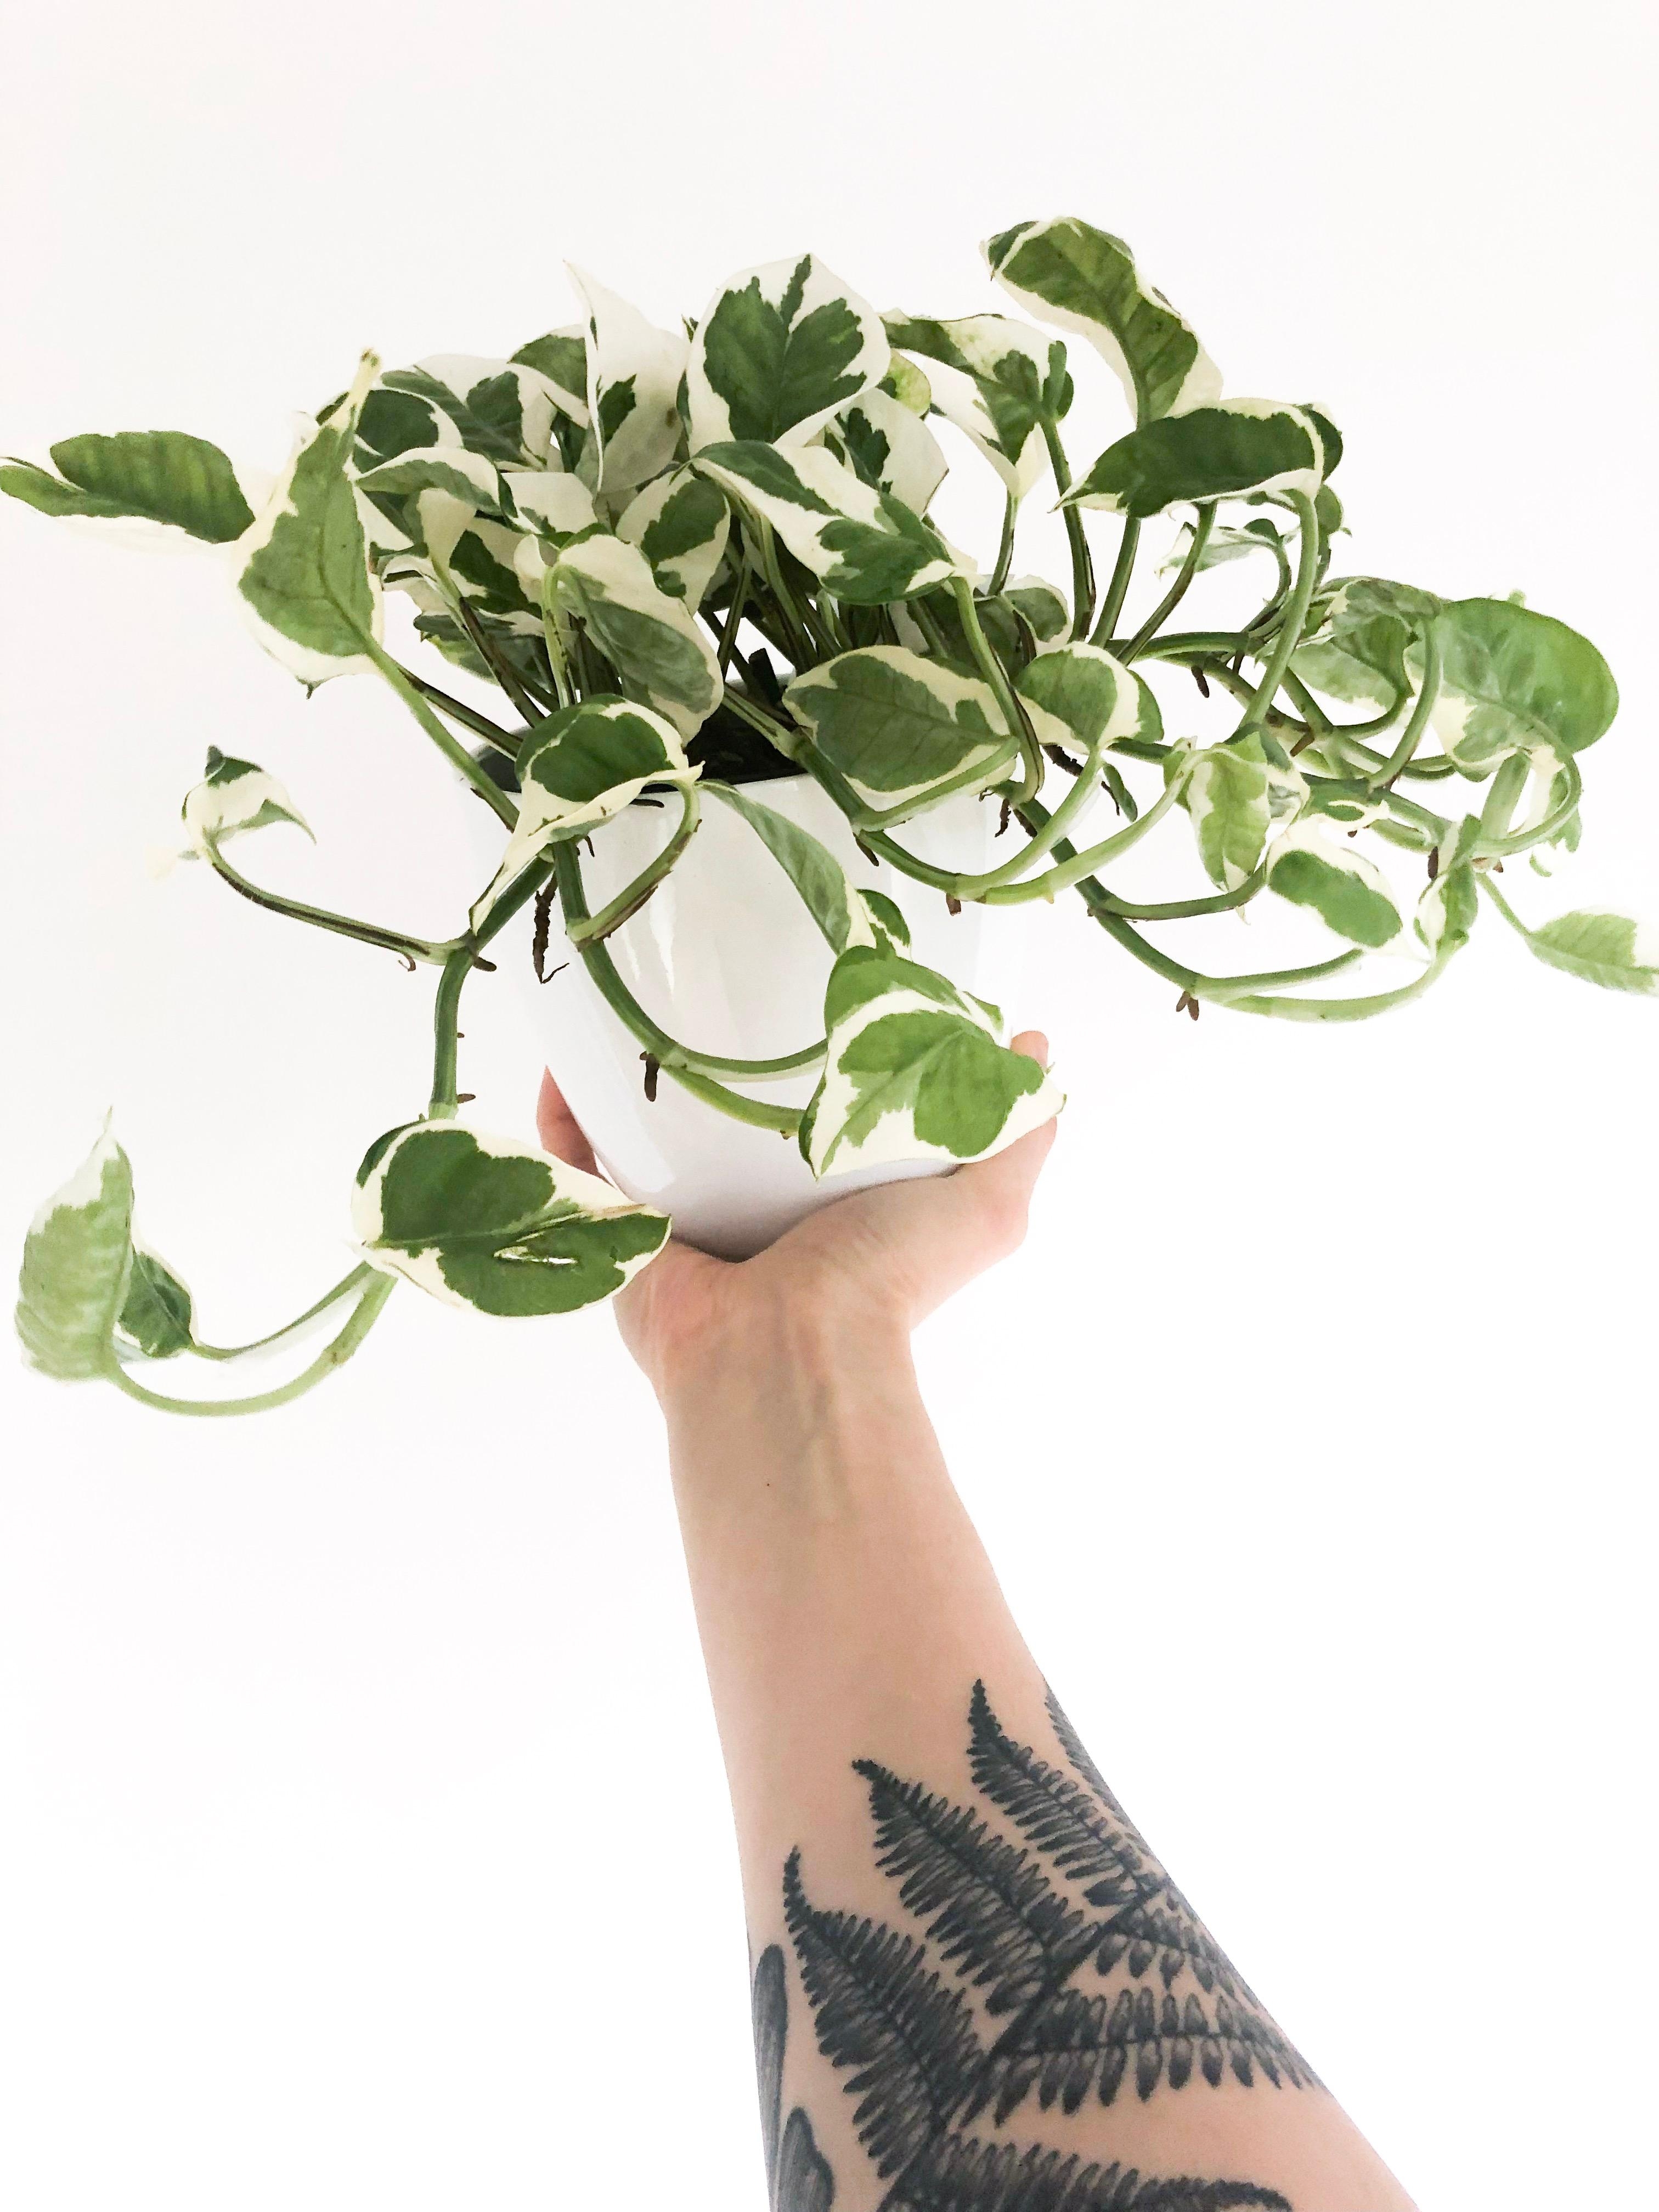 Plantlover 🌱 #plantsarefriends #plantlover #tattoo #efeutute #couchstyle #unterarmtattoo